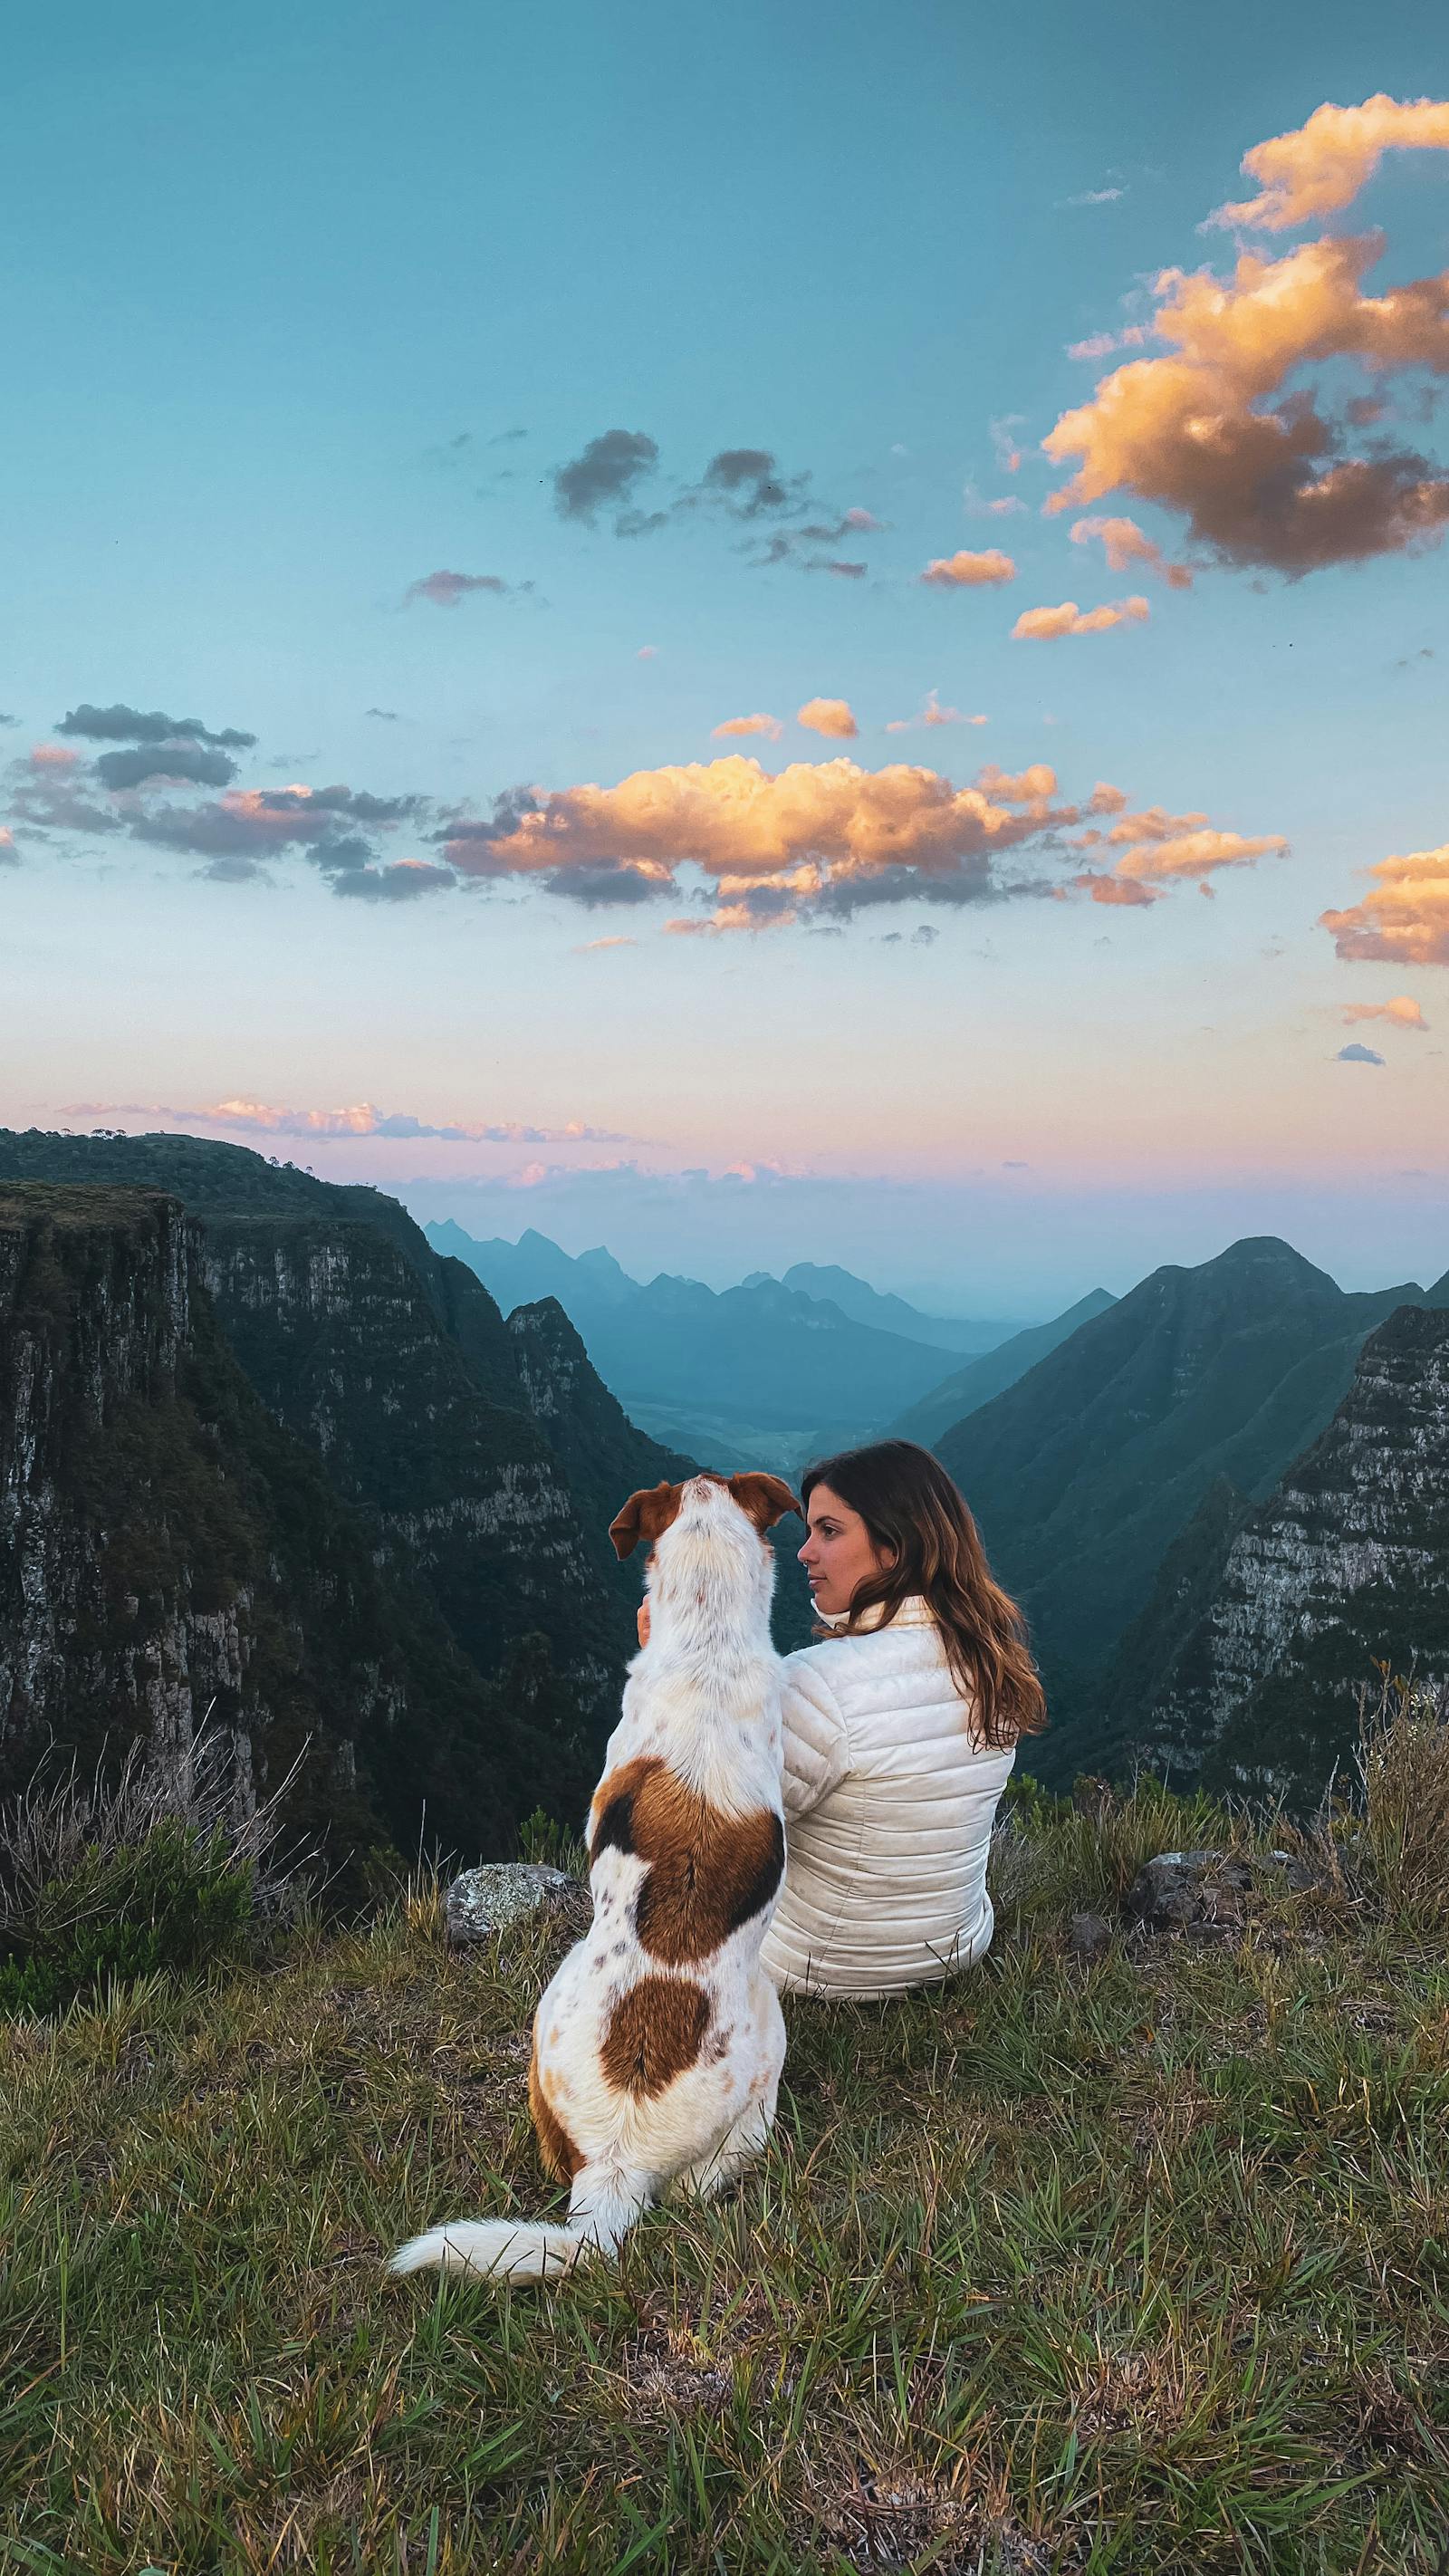 悬崖边缘的爱冒险的女人正在欣赏峡谷的美丽风景 库存照片. 图片 包括有 风景, 砂岩, 本质, 女性, 云彩 - 181811032